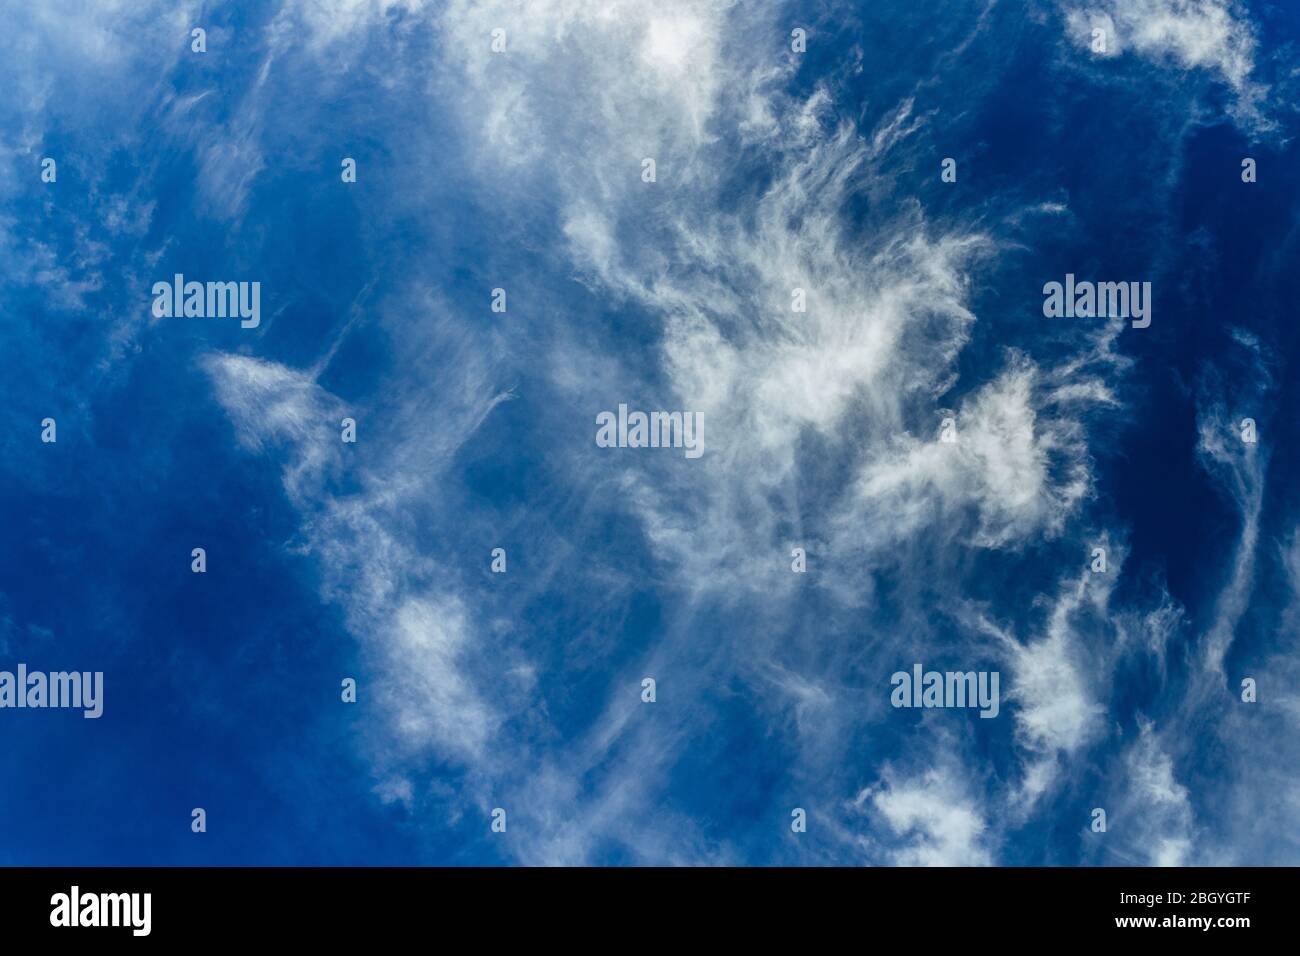 Helle und schöne Fotos von der himmlischen weißen Wolken und gesättigten blauer Himmel mit Sonnenschein. Leichte, zart und luftig bewölkt Hintergrund mit weißen und b Stockfoto